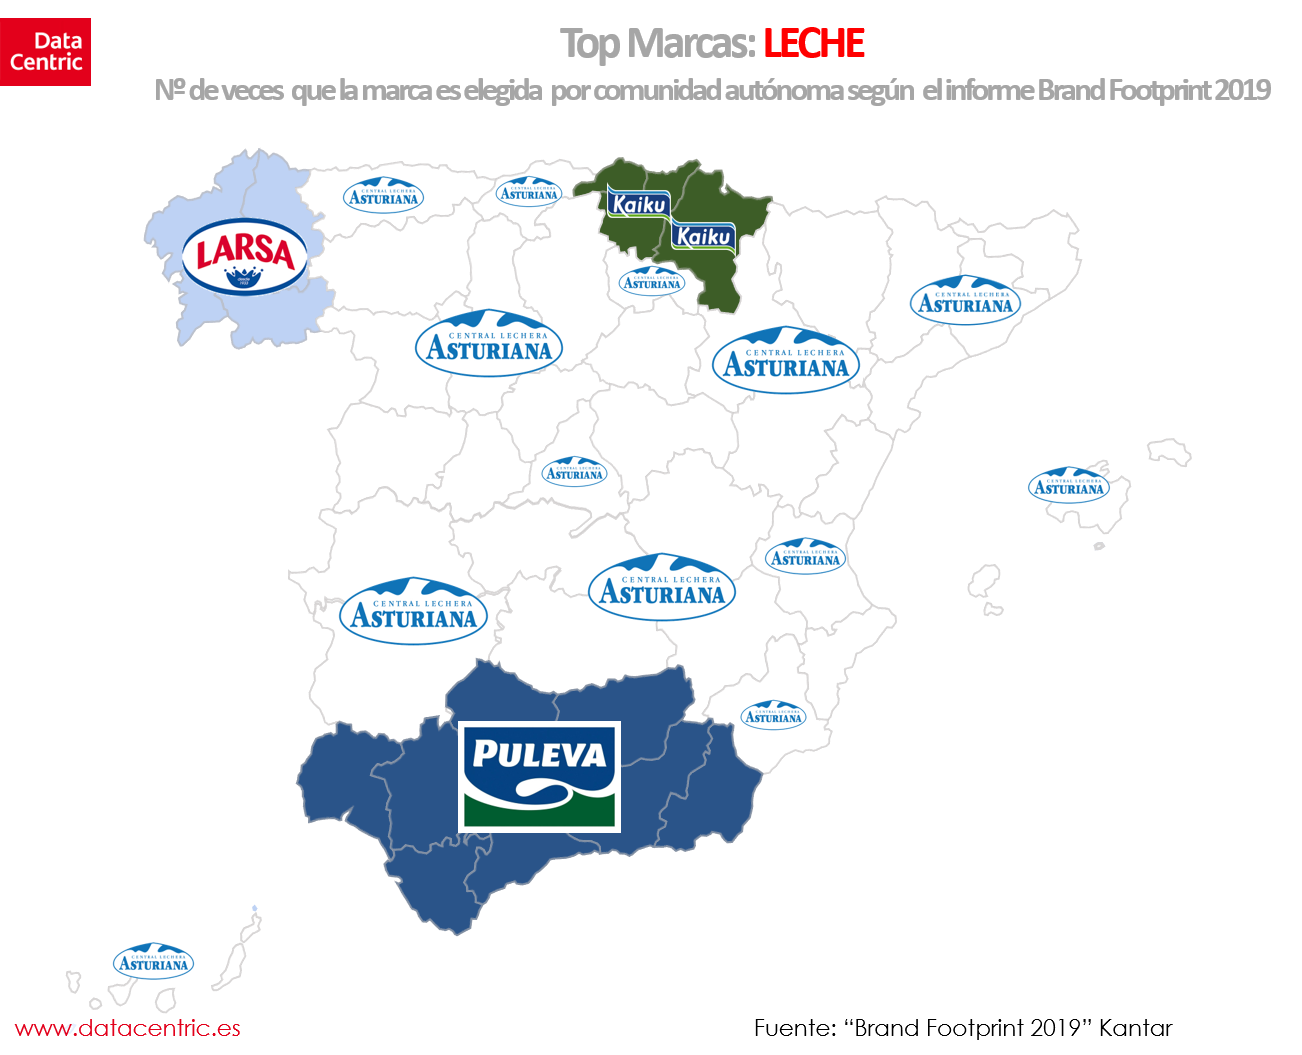 Mapa-de-top-marcas-de-LECHE-en-España.png